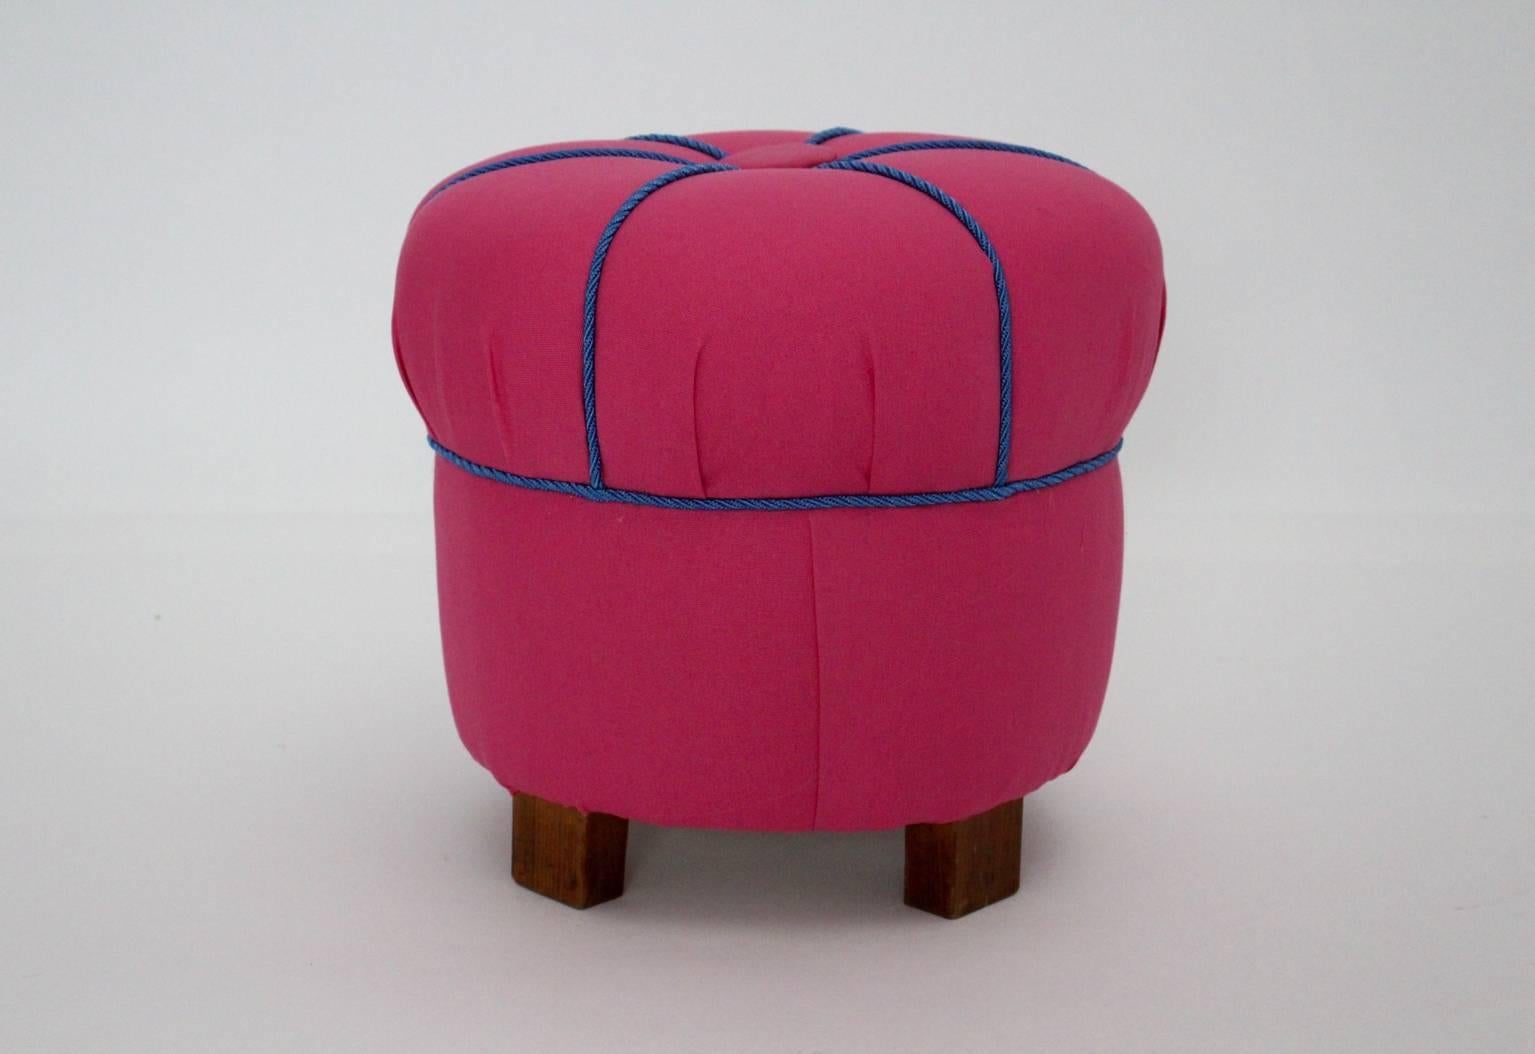 Eine charmante Art Deco rosa Textil Pouf / Hocker oder Tabouret,  Österreich, 1930er Jahre.
Der Hocker ist neu mit einem hochwertigen rosa Stoff bezogen und mit blauen Kordeln verziert.
Der Hocker hat Füße aus Buchenholz.

Der Zustand ist sehr gut.
